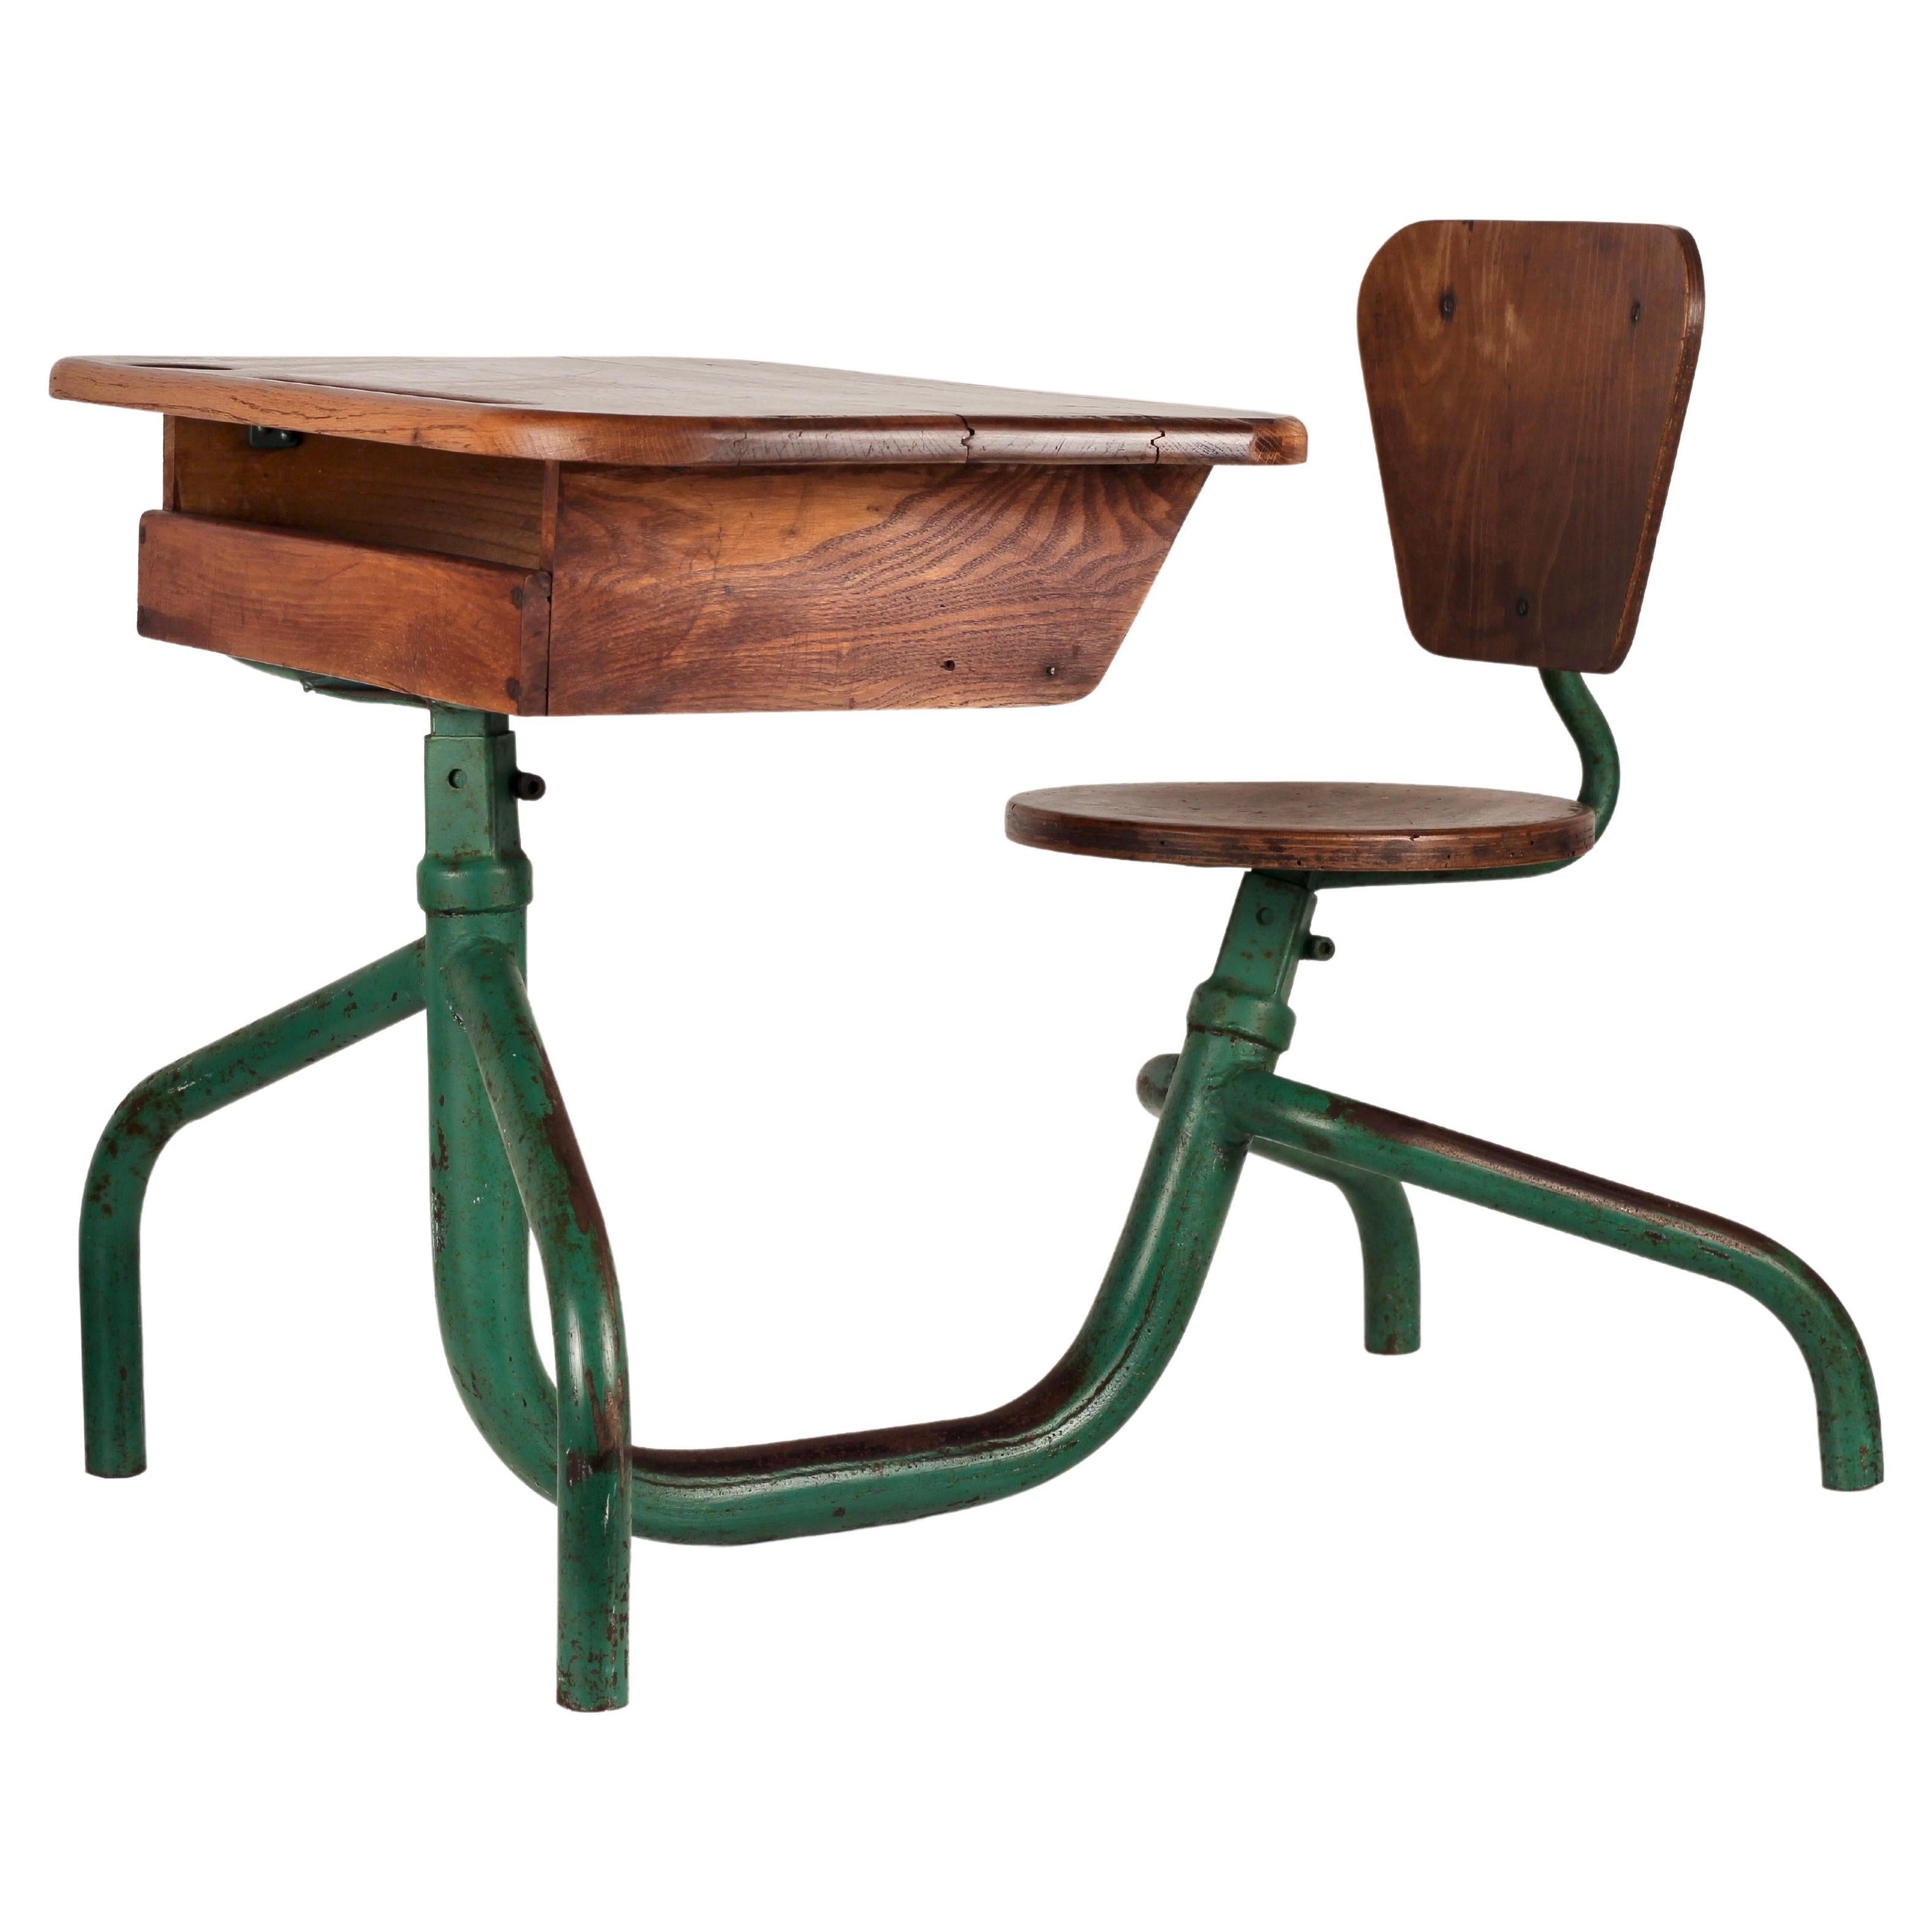 Vintage Industrial Jean Prouvé Style one Seat School desk